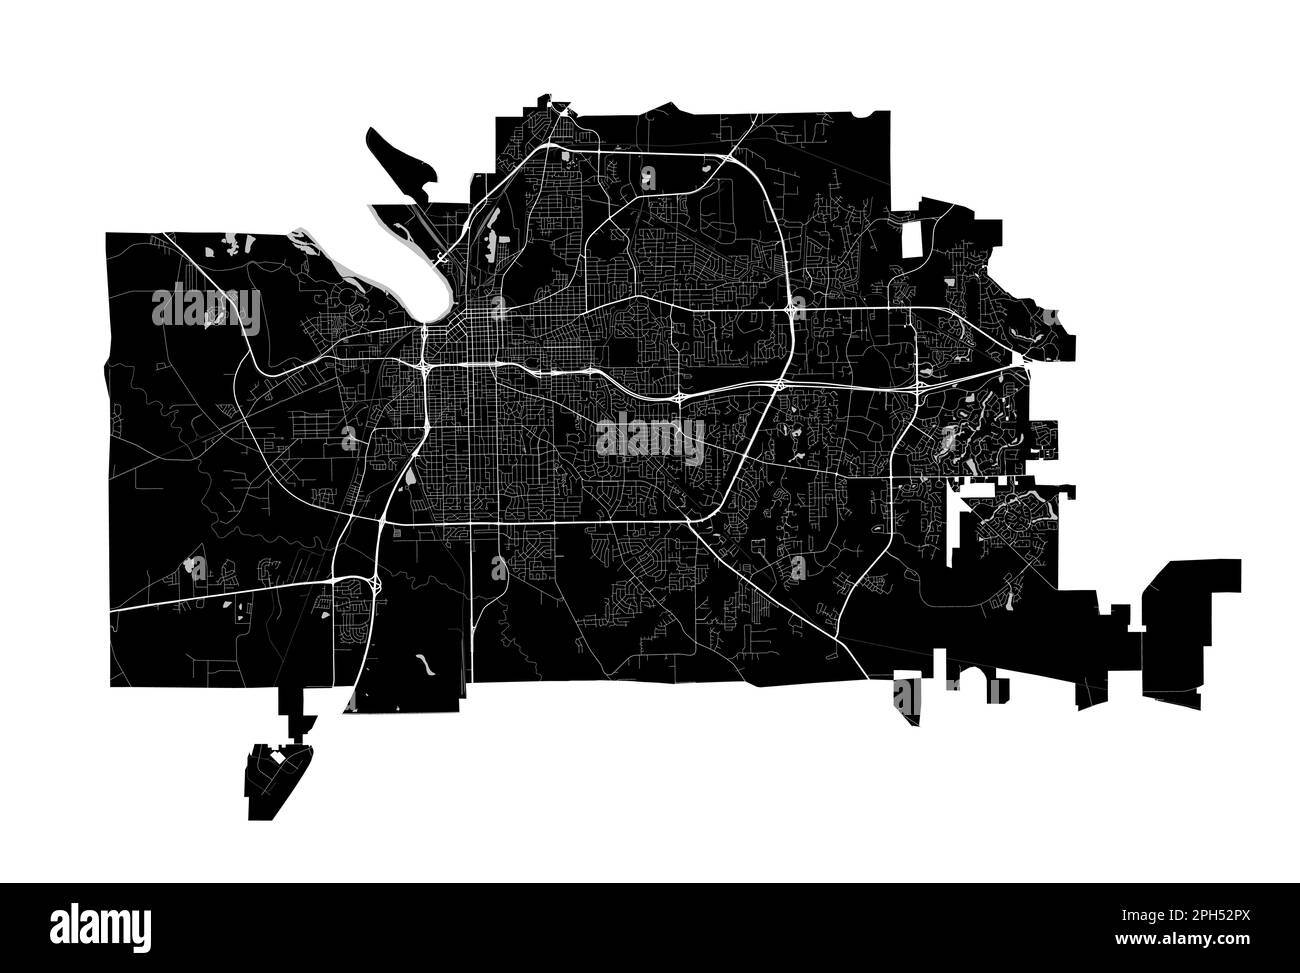 Montgomery, Alabama-Karte. Detaillierte schwarze Karte der Stadtverwaltung von Montgomery. Stadtbild-Poster mit Blick auf die Metropolitane Aria. Schwarzes Land mit weißem Rogen Stock Vektor